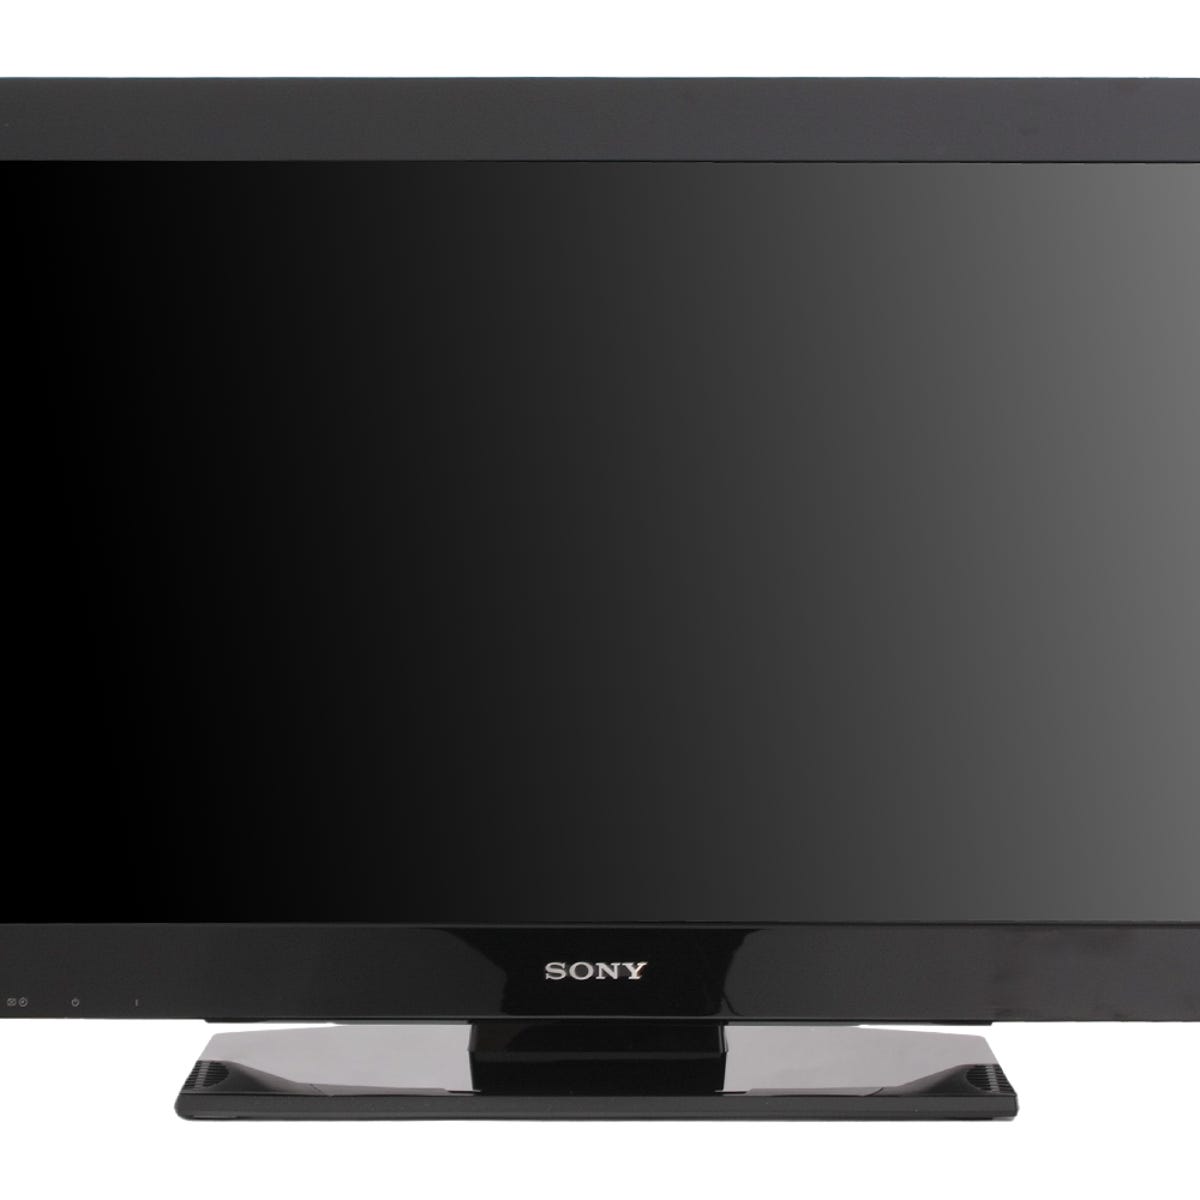 Sony Bravia KDL-32BX300 review: Sony Bravia KDL-32BX300 - CNET